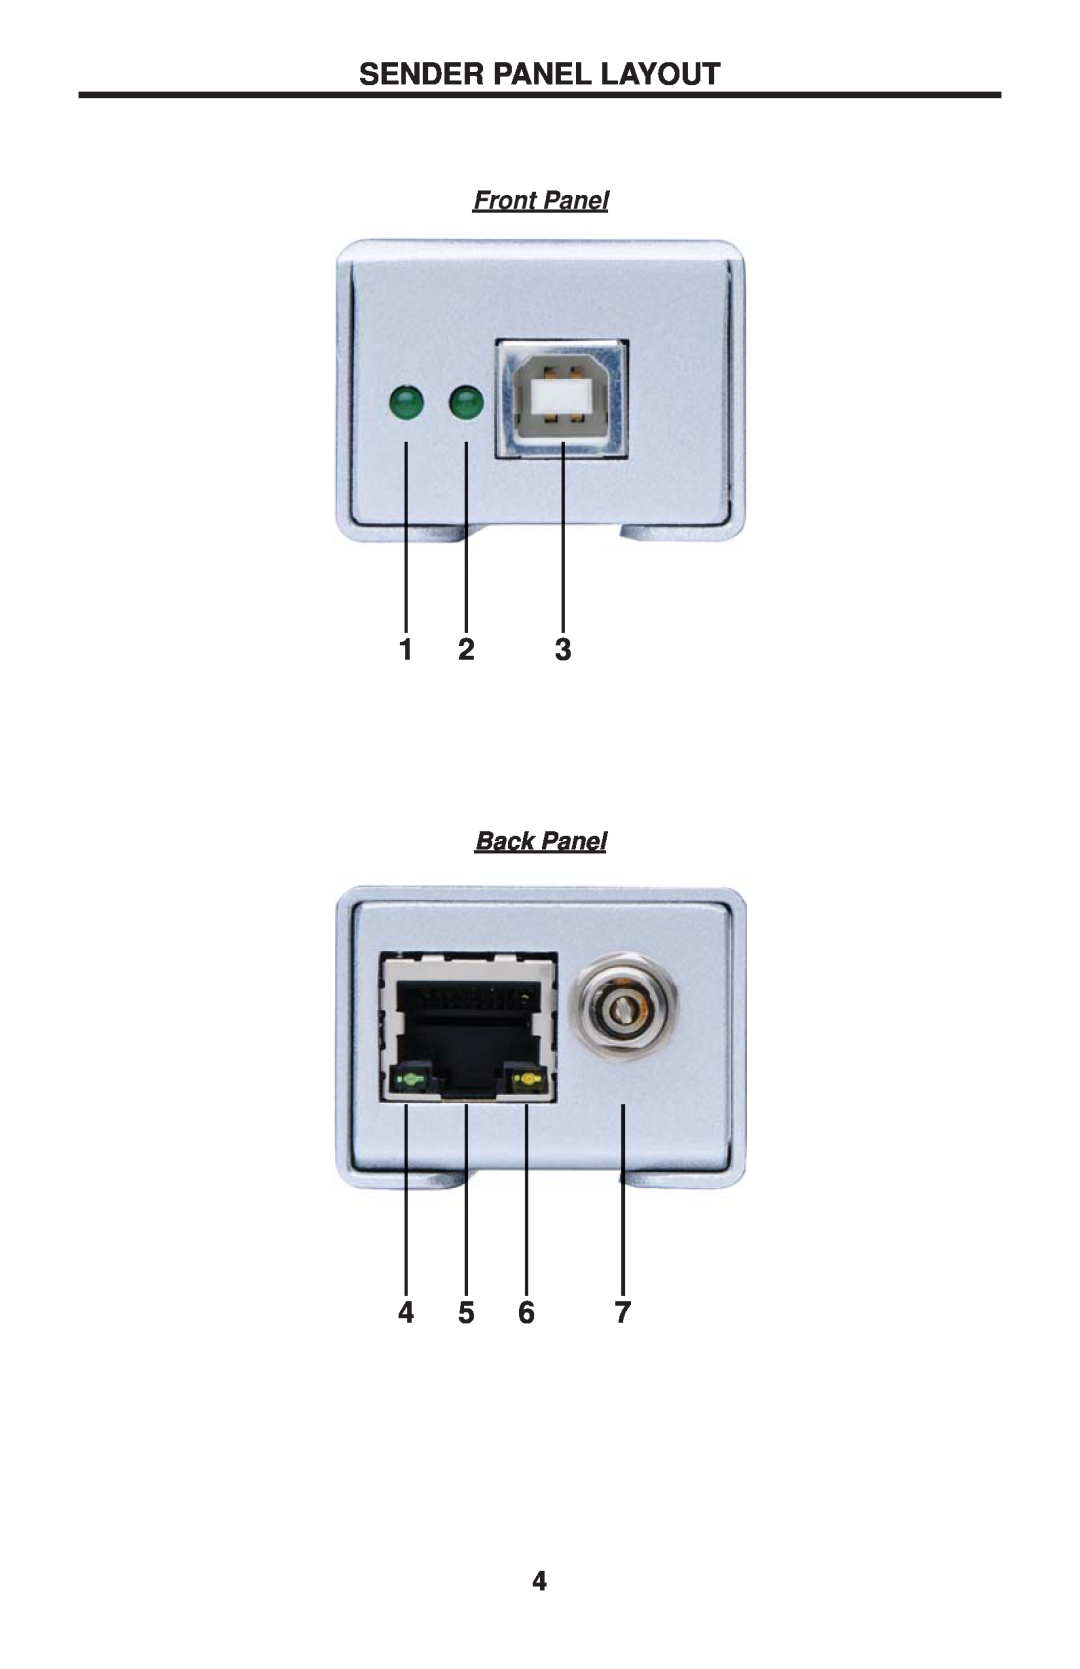 Gefen EXT-USB2.0-LR user manual Sender Panel Layout, Front Panel, Back Panel 